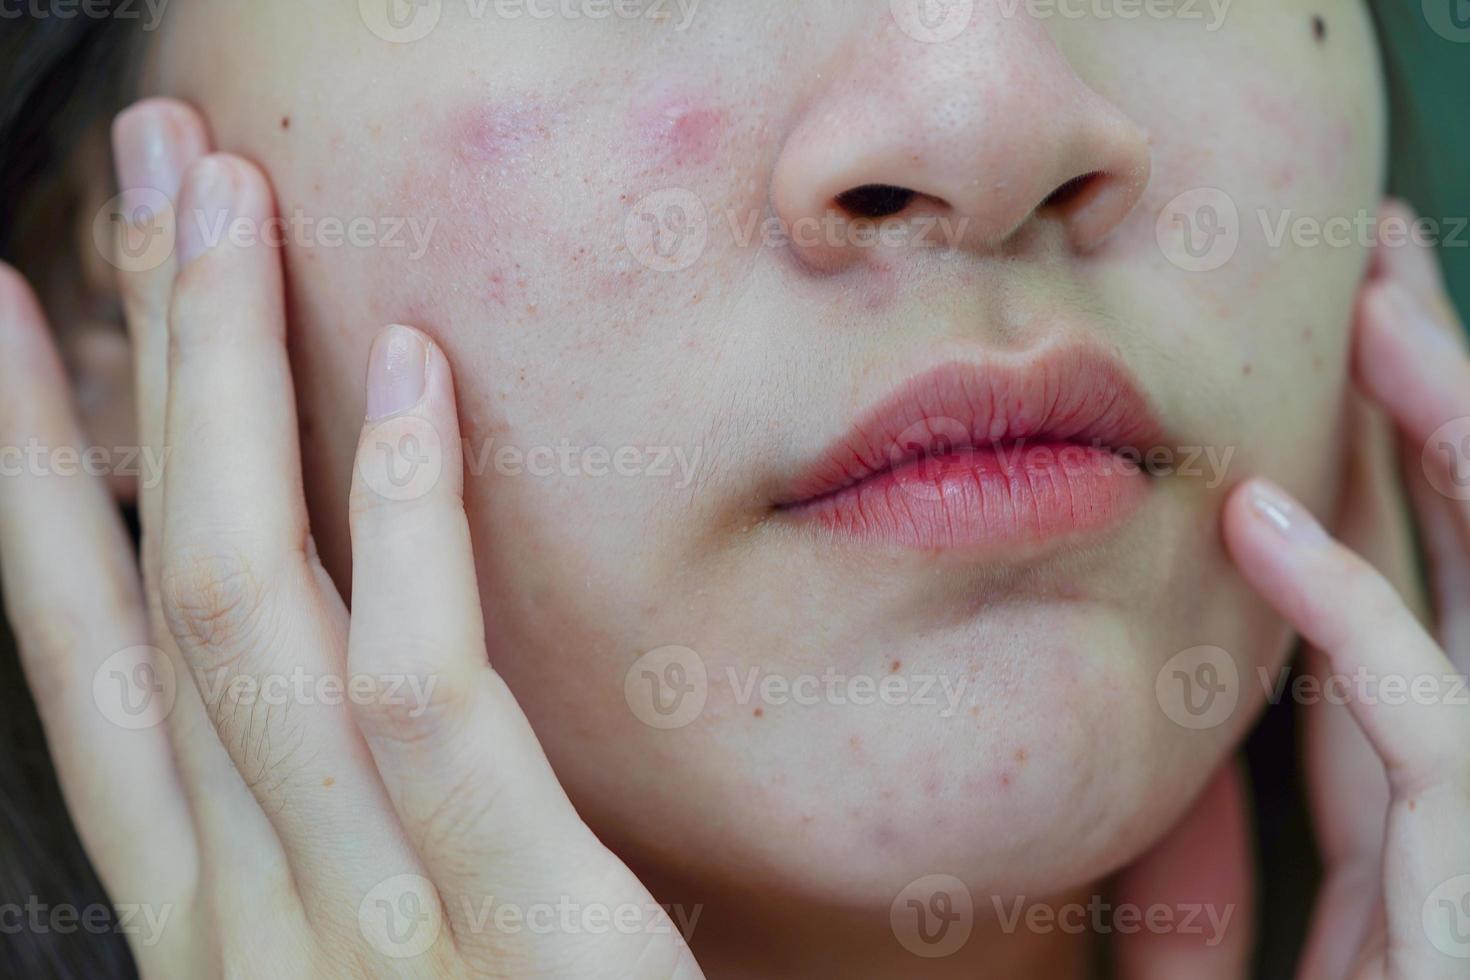 grano de acné y cicatriz en la cara de la piel, trastornos de las glándulas sebáceas, problema de belleza del cuidado de la piel de las adolescentes. foto